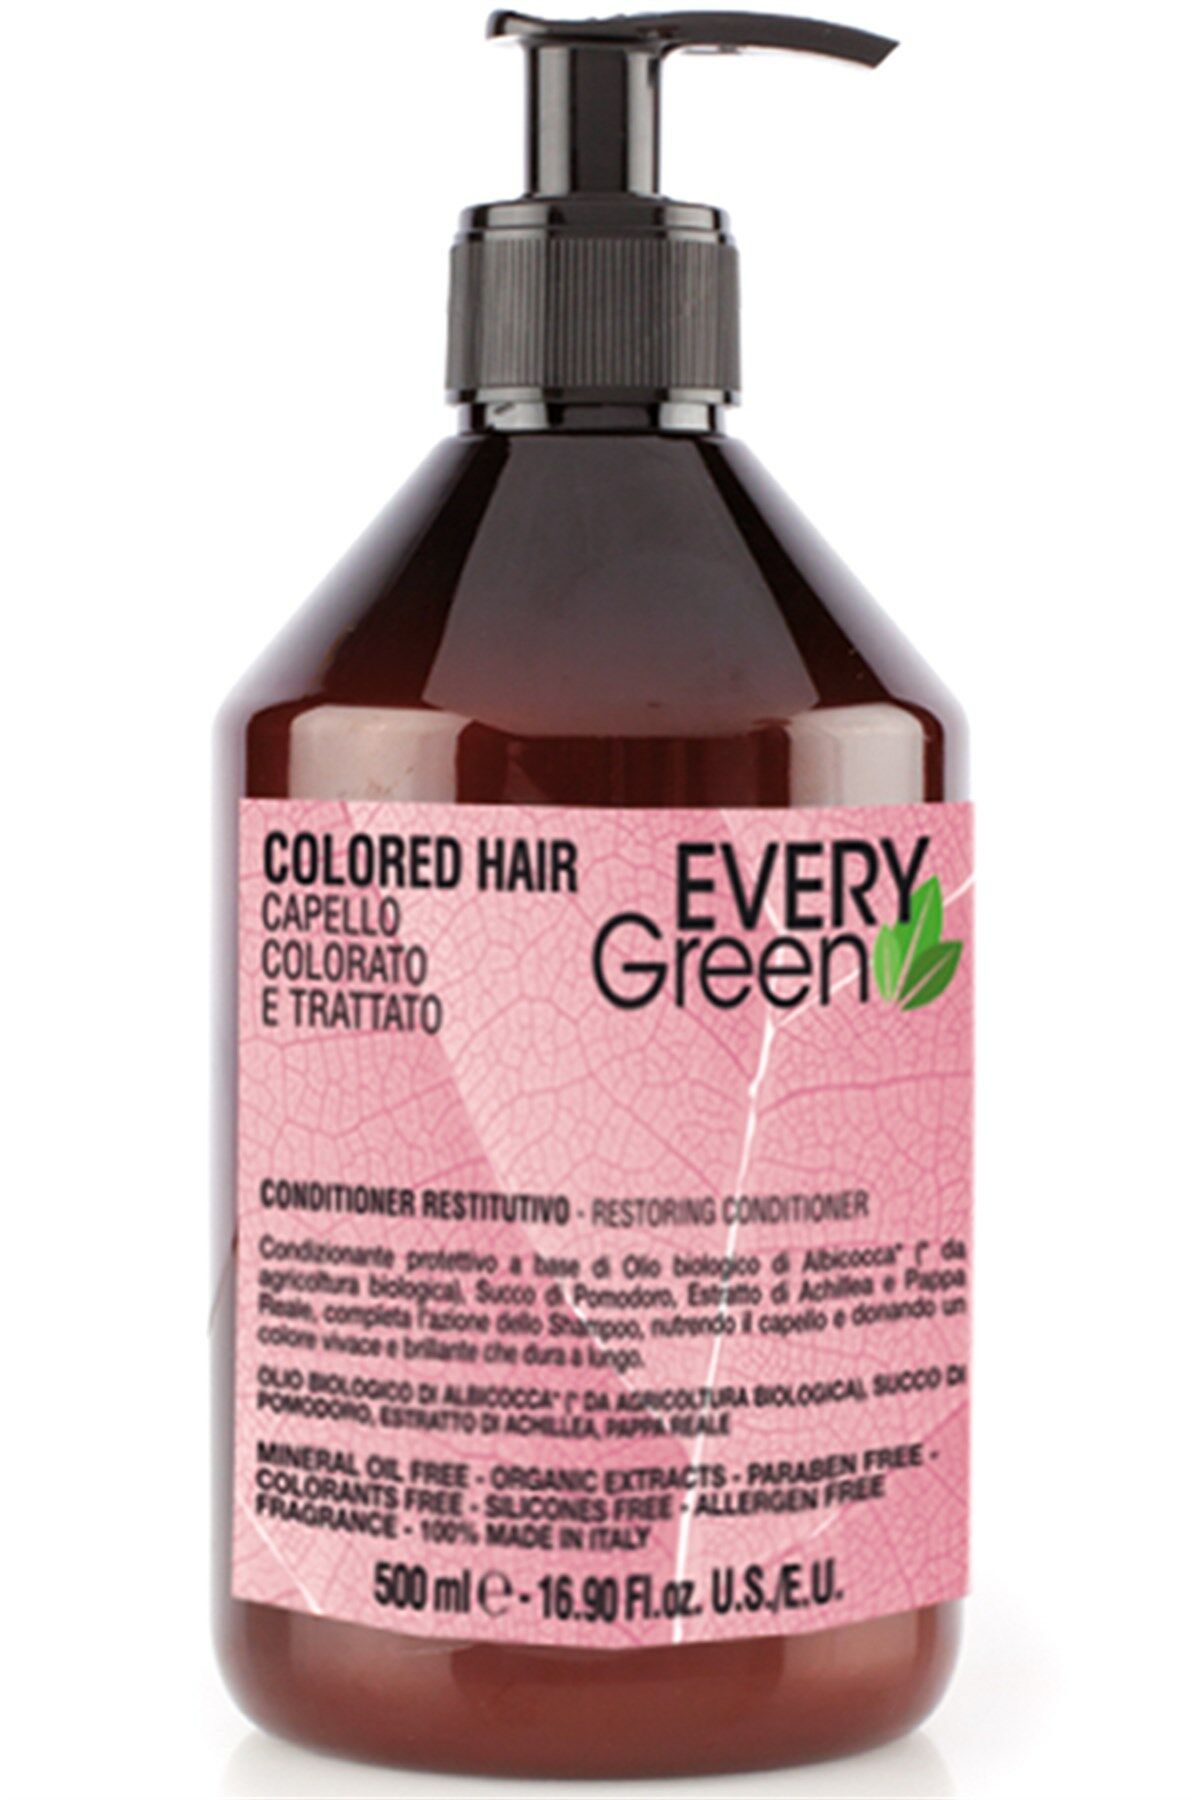 EveryGreen Colored Hair Restoring Conditioner - Boyalı Saçlara Özel Bakım Kremi 500 Ml.